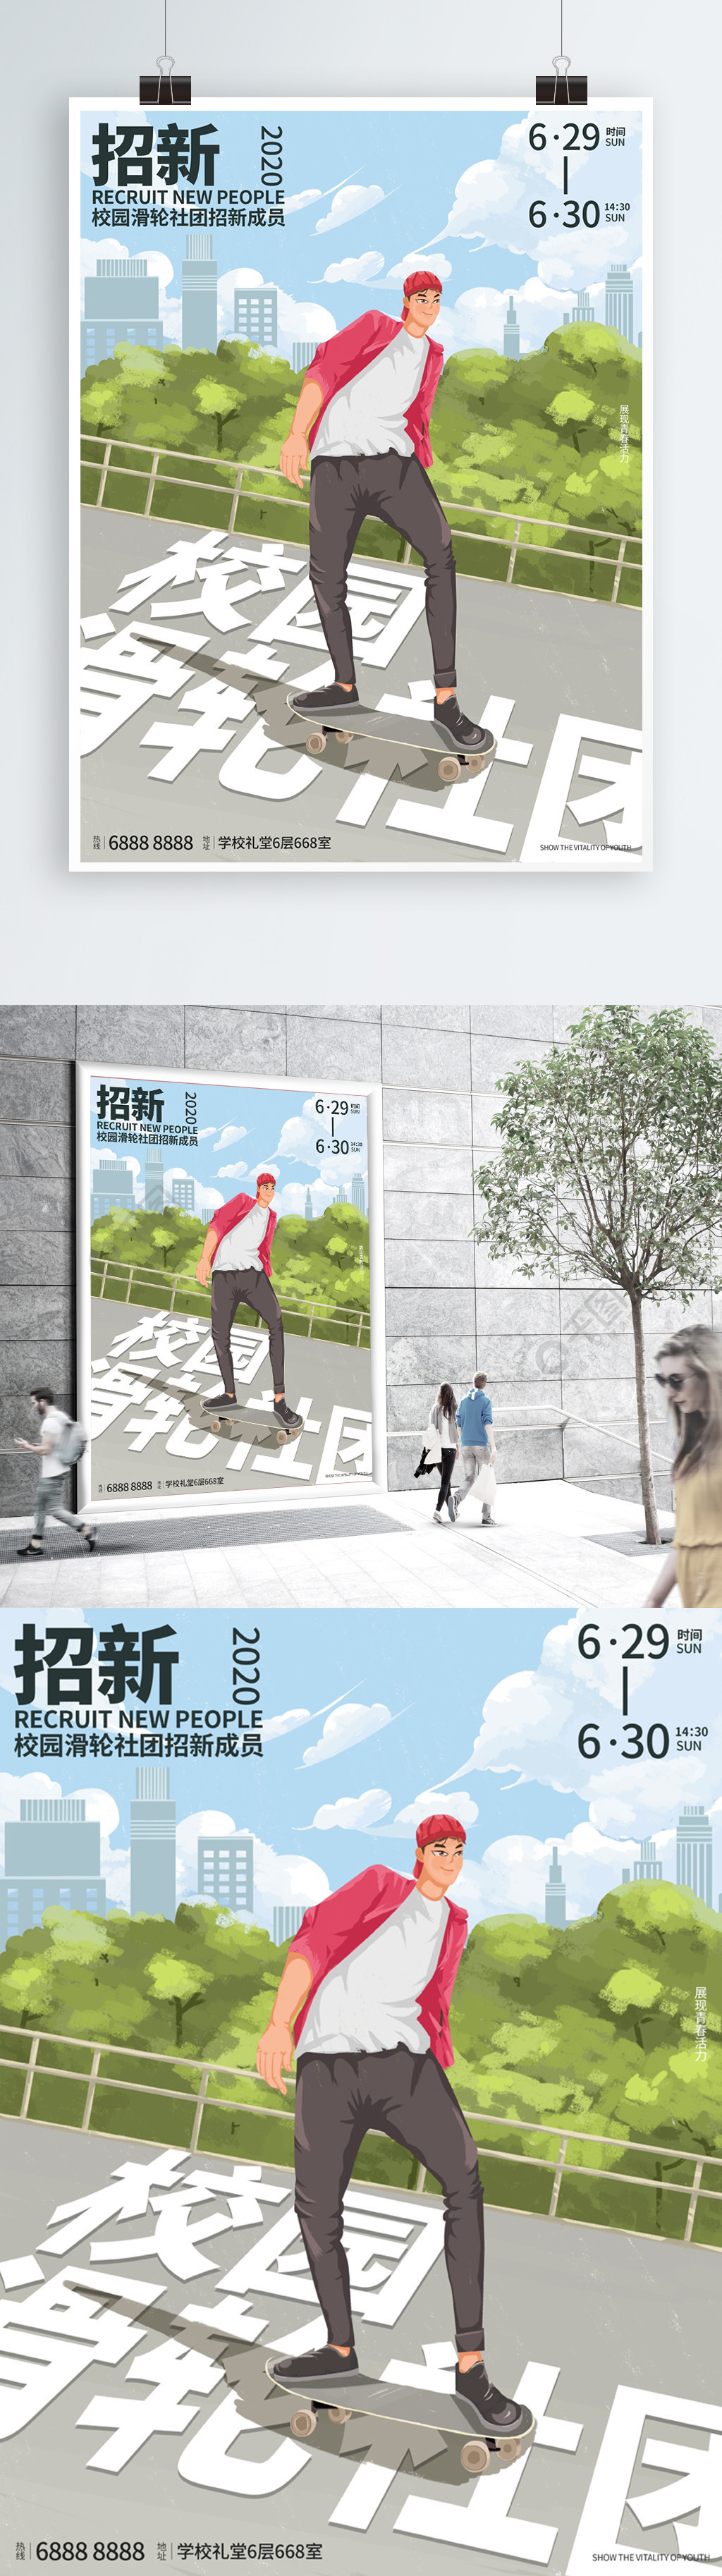 原创手绘校园轮滑社团招新海报1年前发布